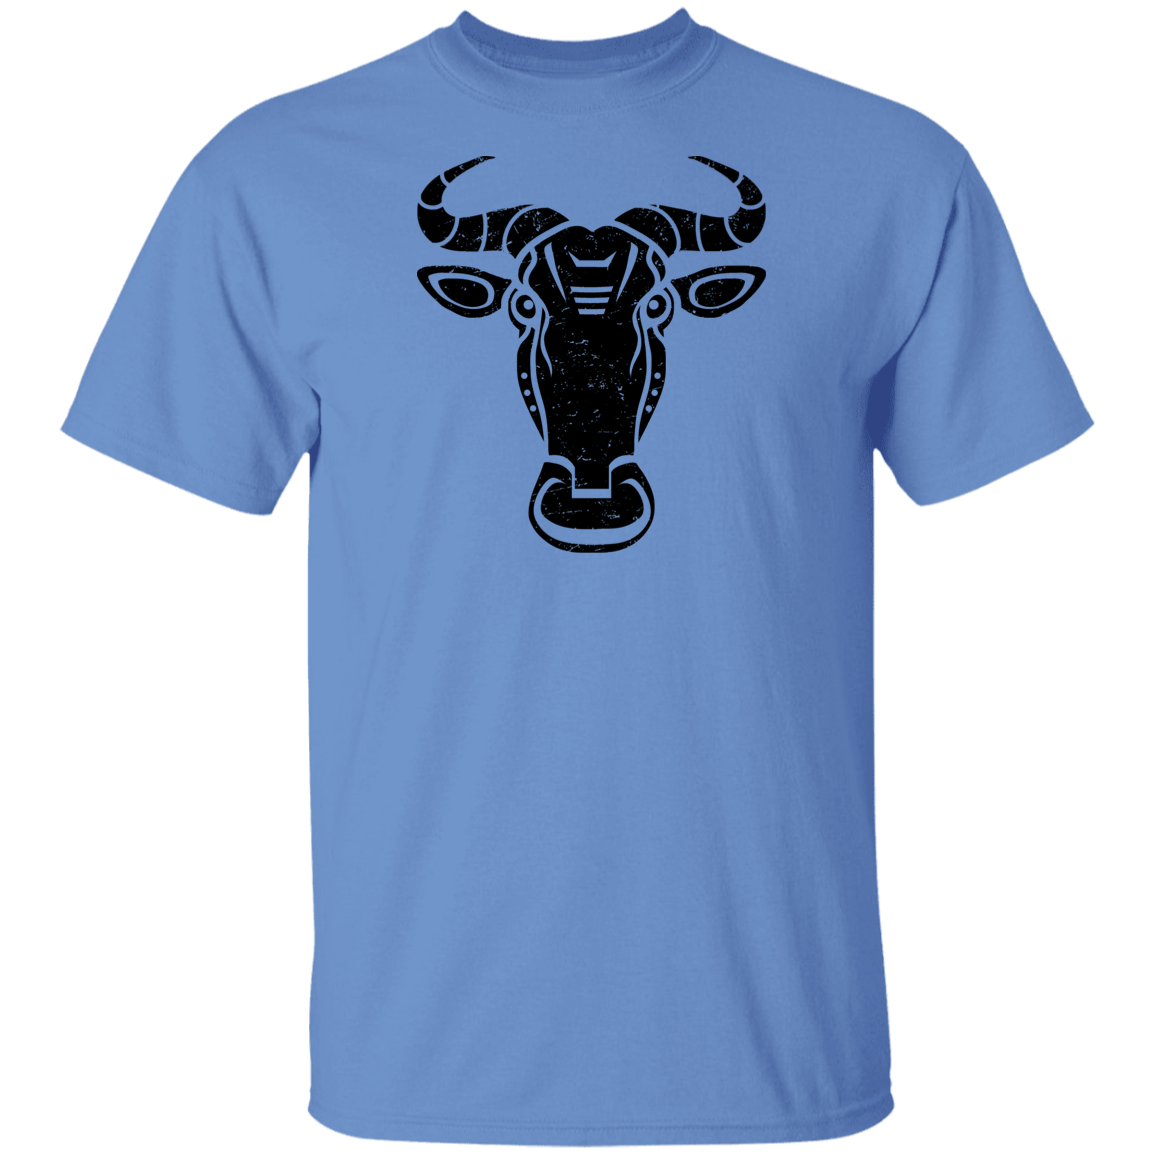 Black Distressed Emblem T-Shirt for Kids (Wildebeest/Brute)